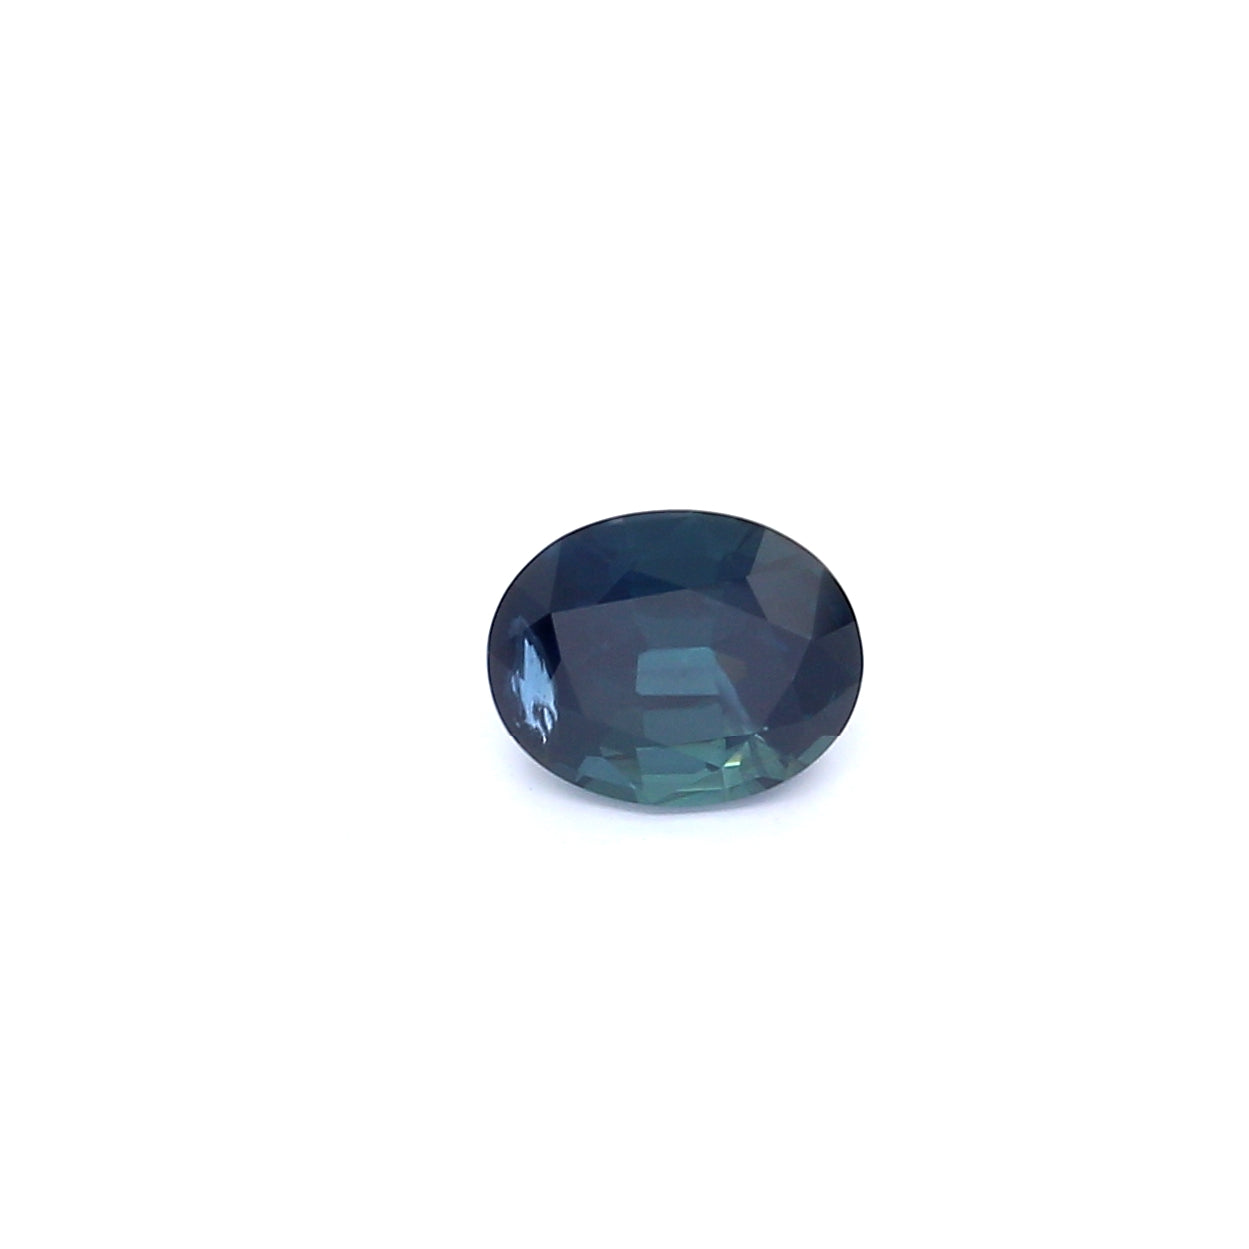 1.08ct Greenish Blue, Oval Sapphire, Heated, Basaltic - 6.35 x 5.10 x 4.01mm